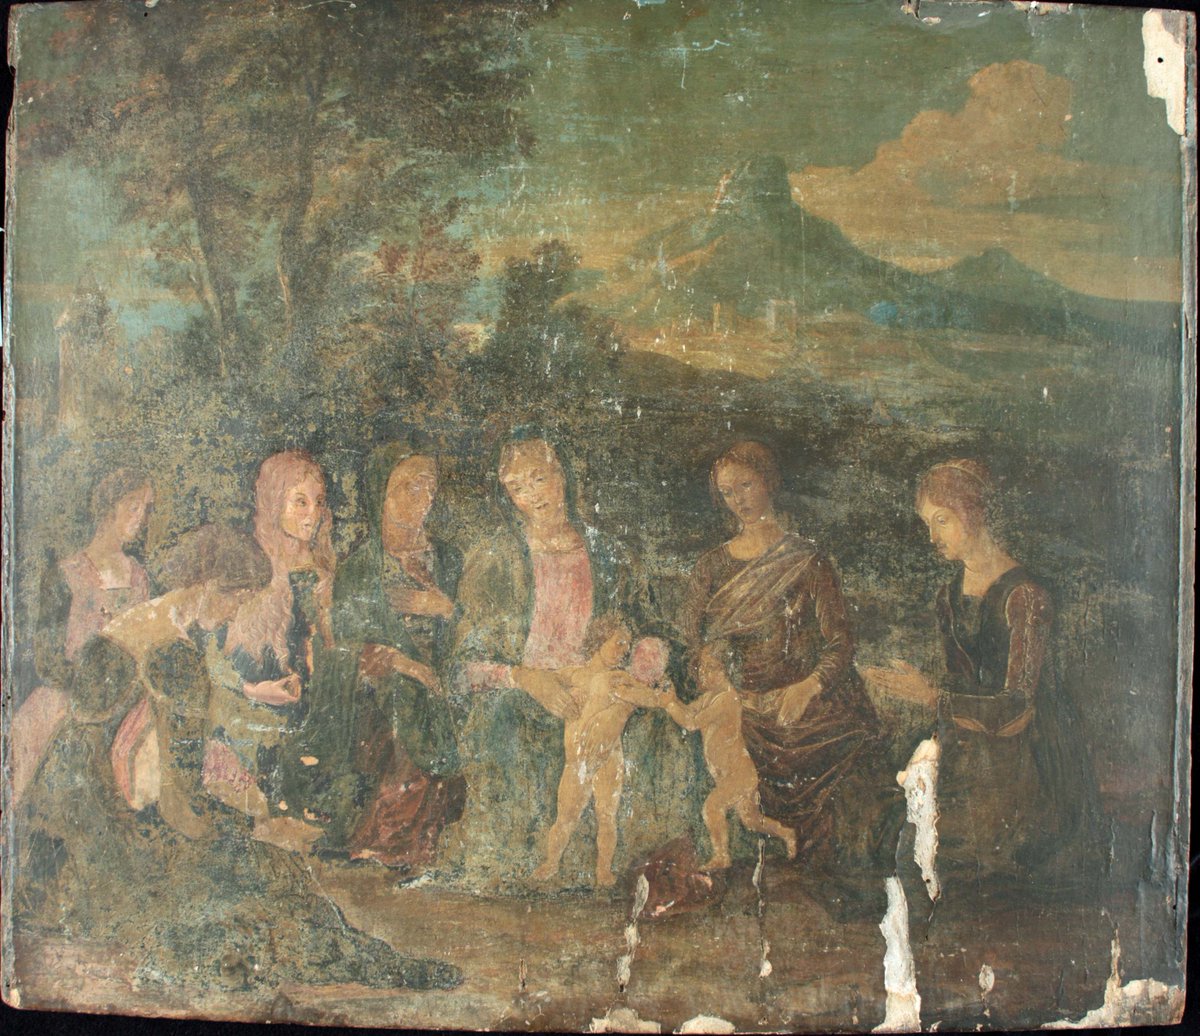 Mini 🧵 sobre una obra de Andrea Mantegna encontrada en los almacenes del Museo Corner de Venecia.
Aquí antes de ser restuarada.